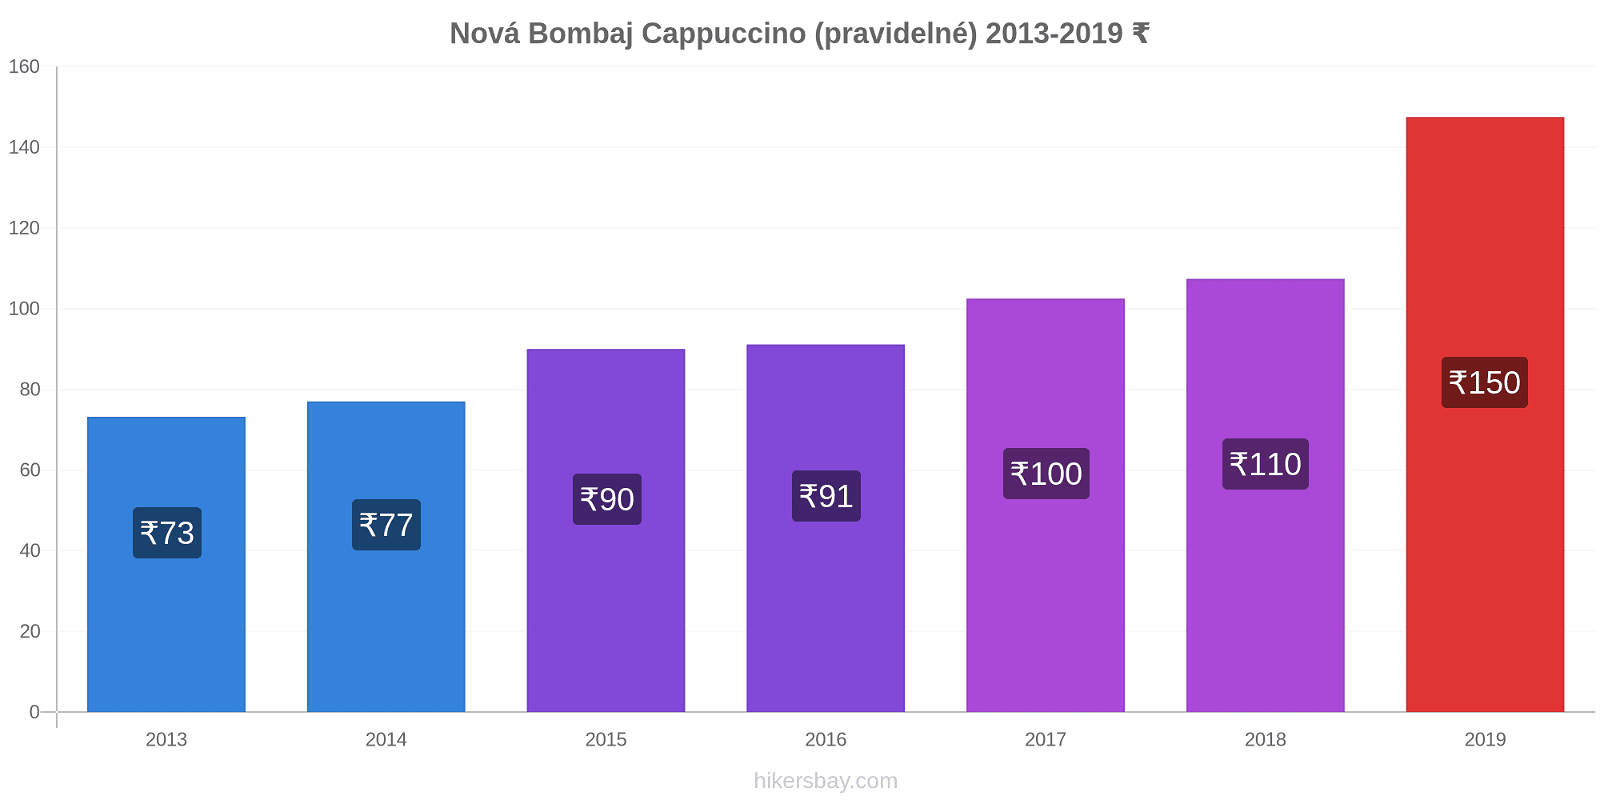 Nová Bombaj změny cen Cappuccino (pravidelné) hikersbay.com